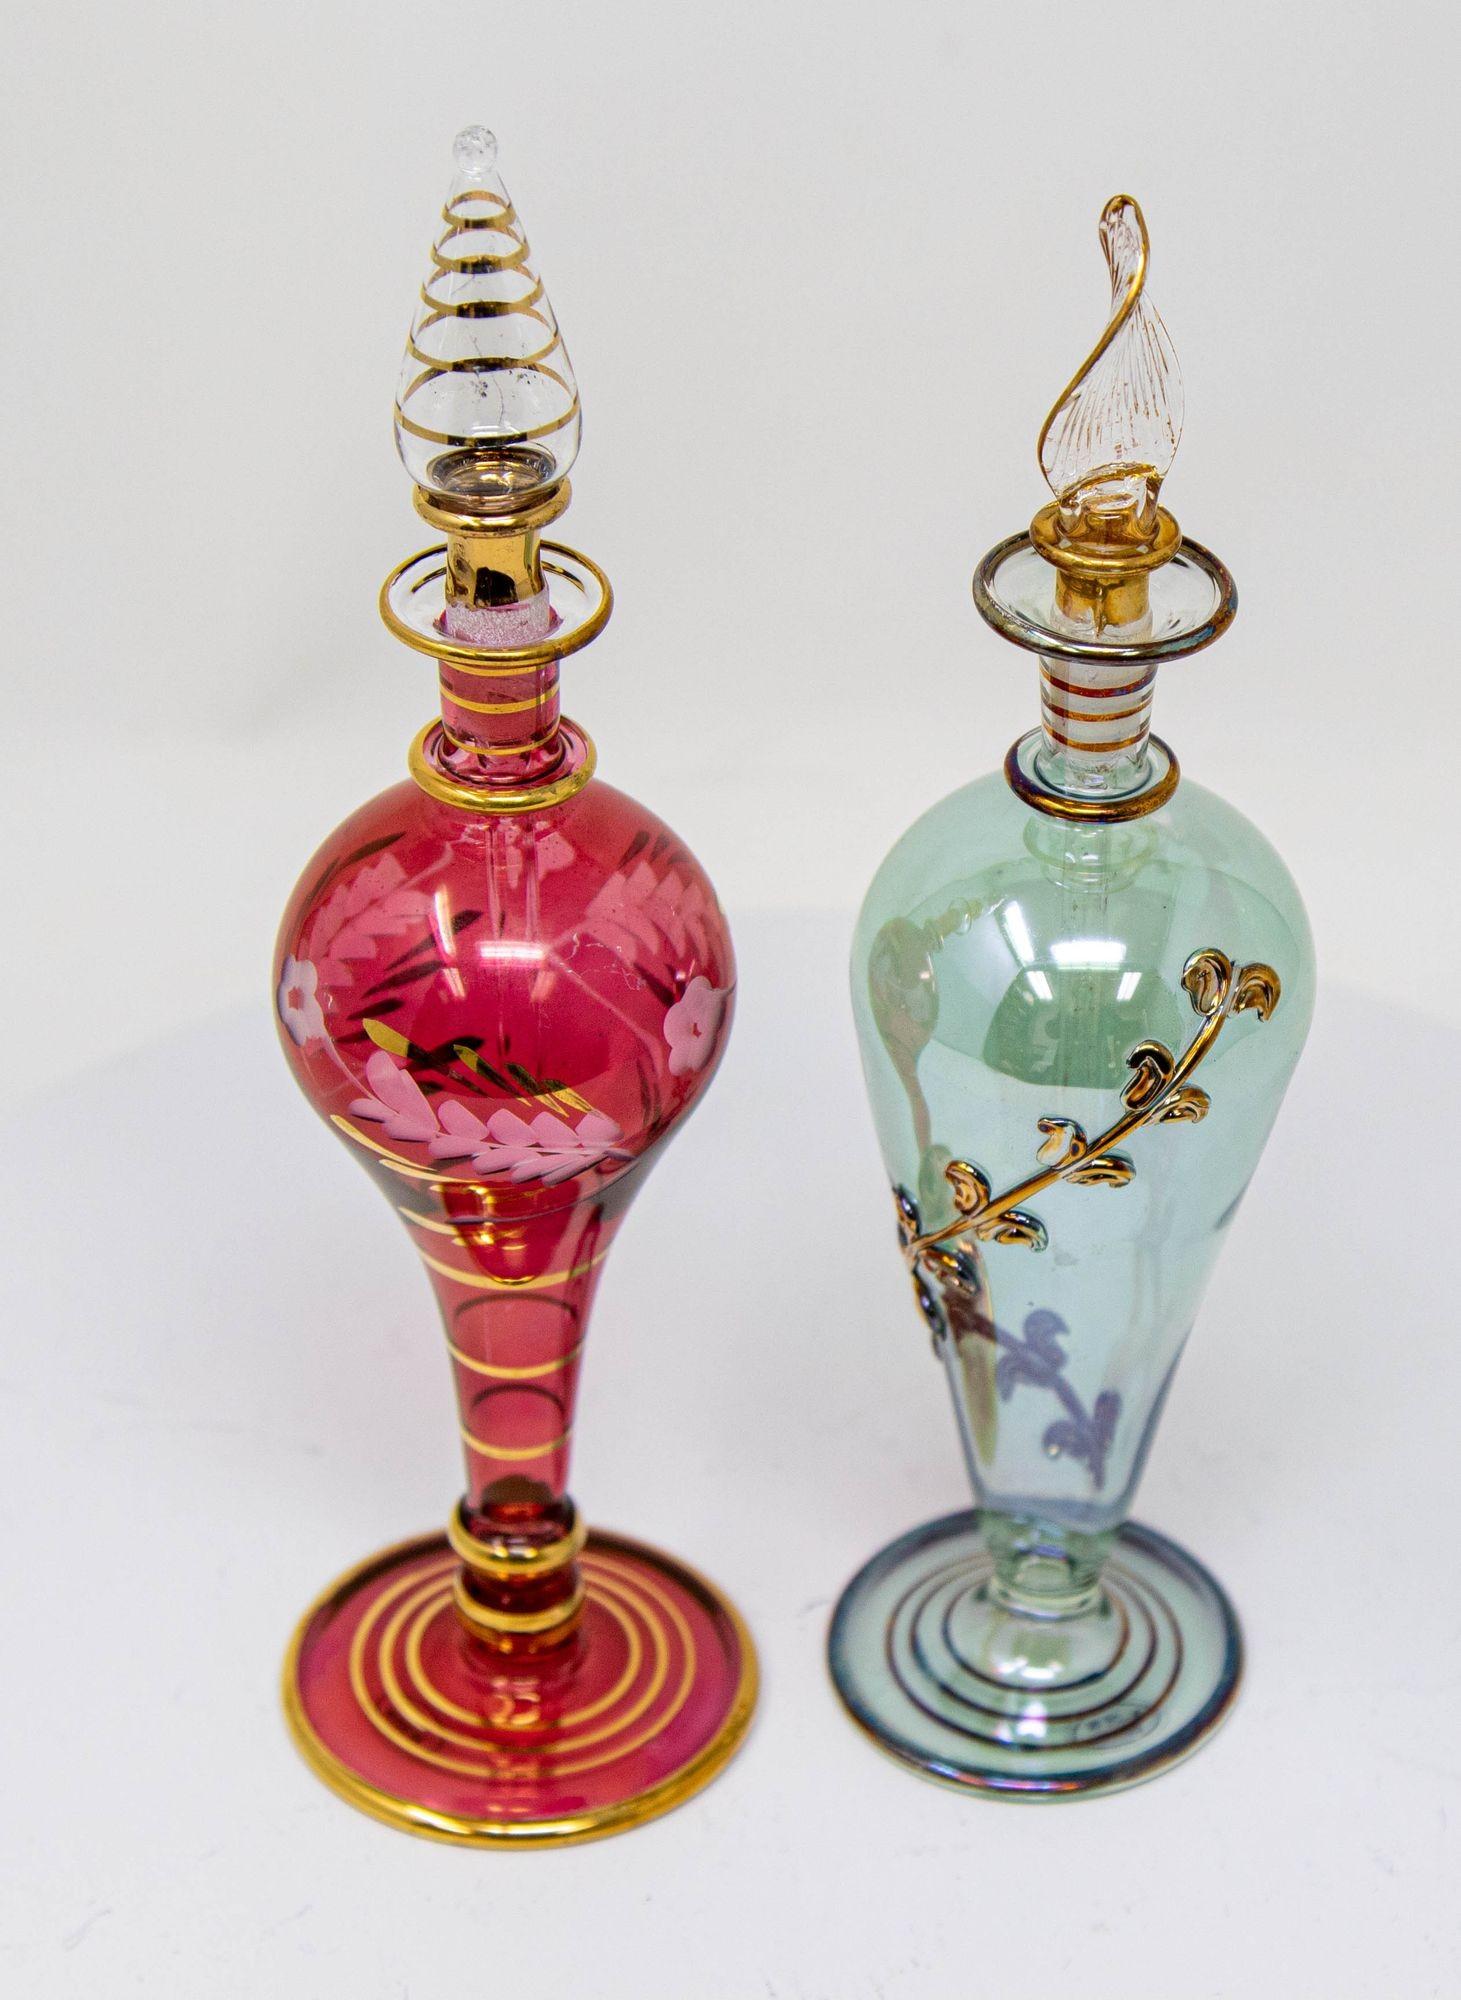 Ensemble de 2 flacons de parfum égyptiens en verre d'art 1980.
Flacon de parfum en verre doré, fait à la main, en verre d'art égyptien.
Flacons de parfum égyptiens set de deux flacons de parfum multicolores décoratifs soufflés à la main.
Flacons de